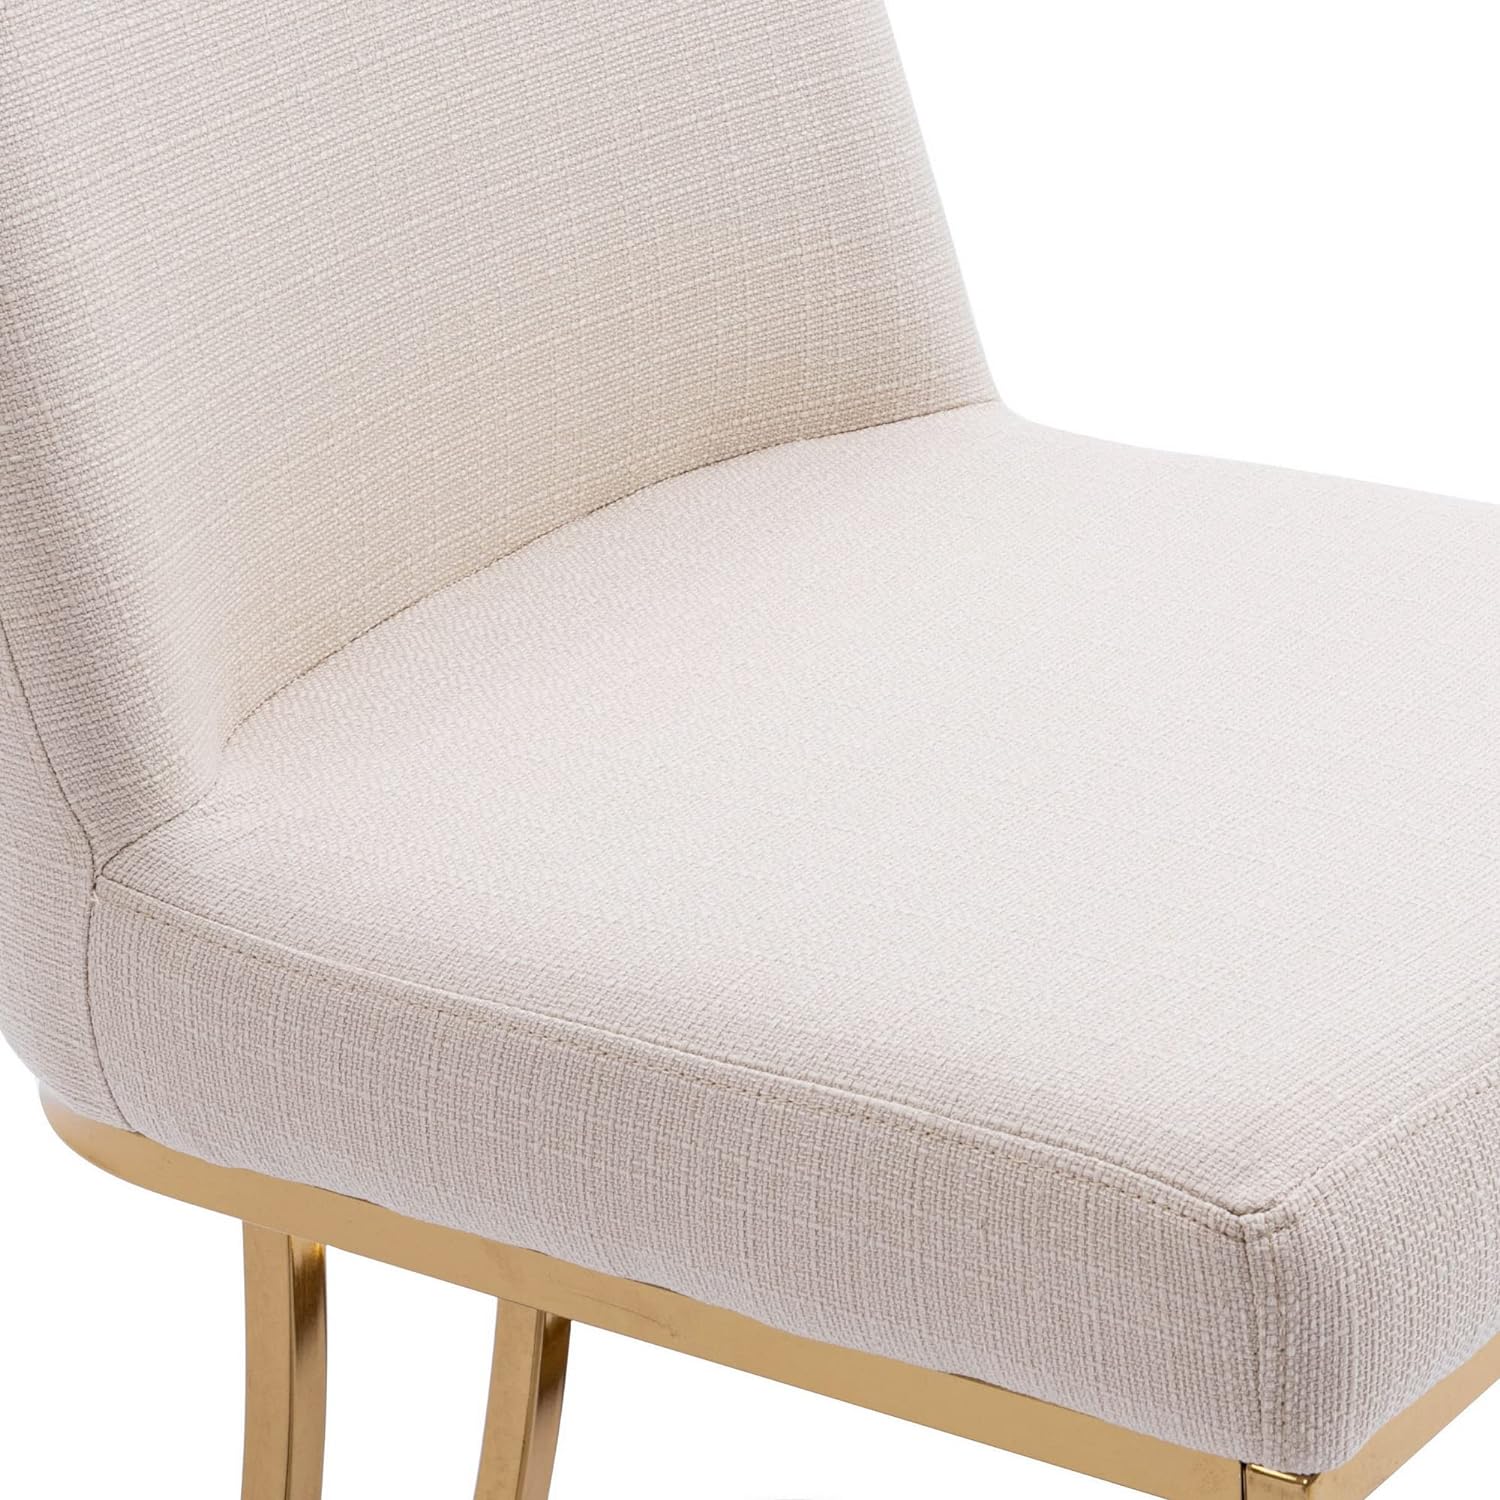 Juego de 2 sillas de comedor tapizadas de lino, silla clásica de tela moderna